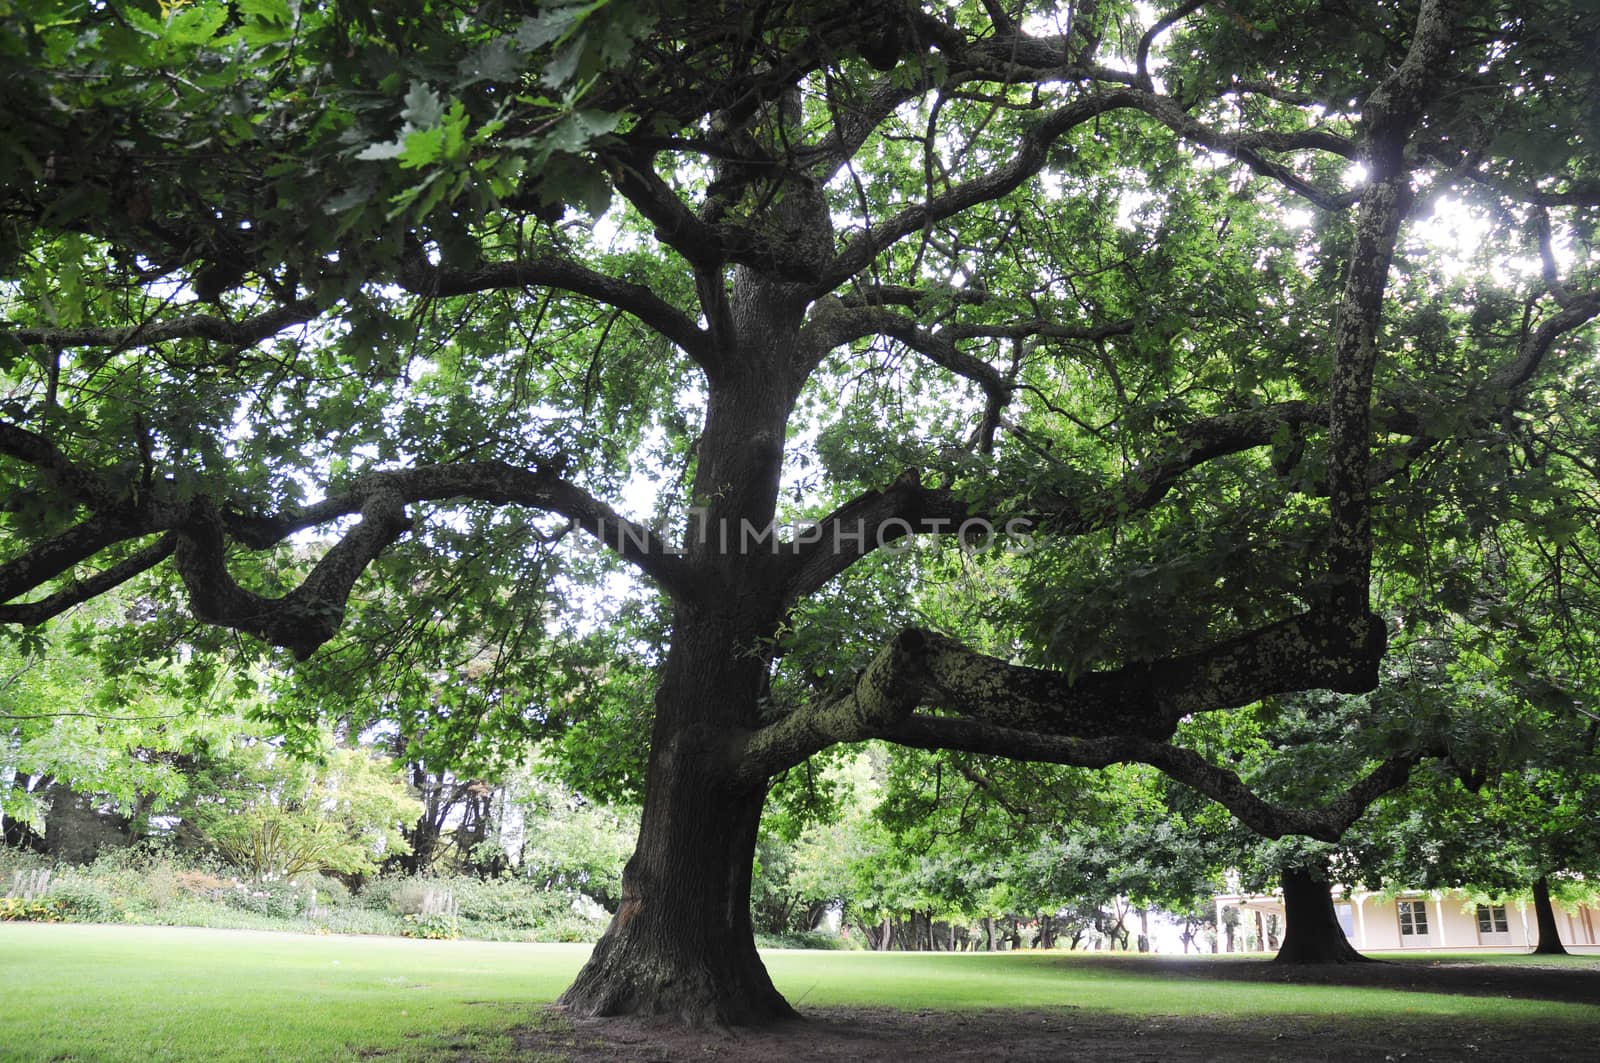 Big oak tree in a garden by eyeofpaul